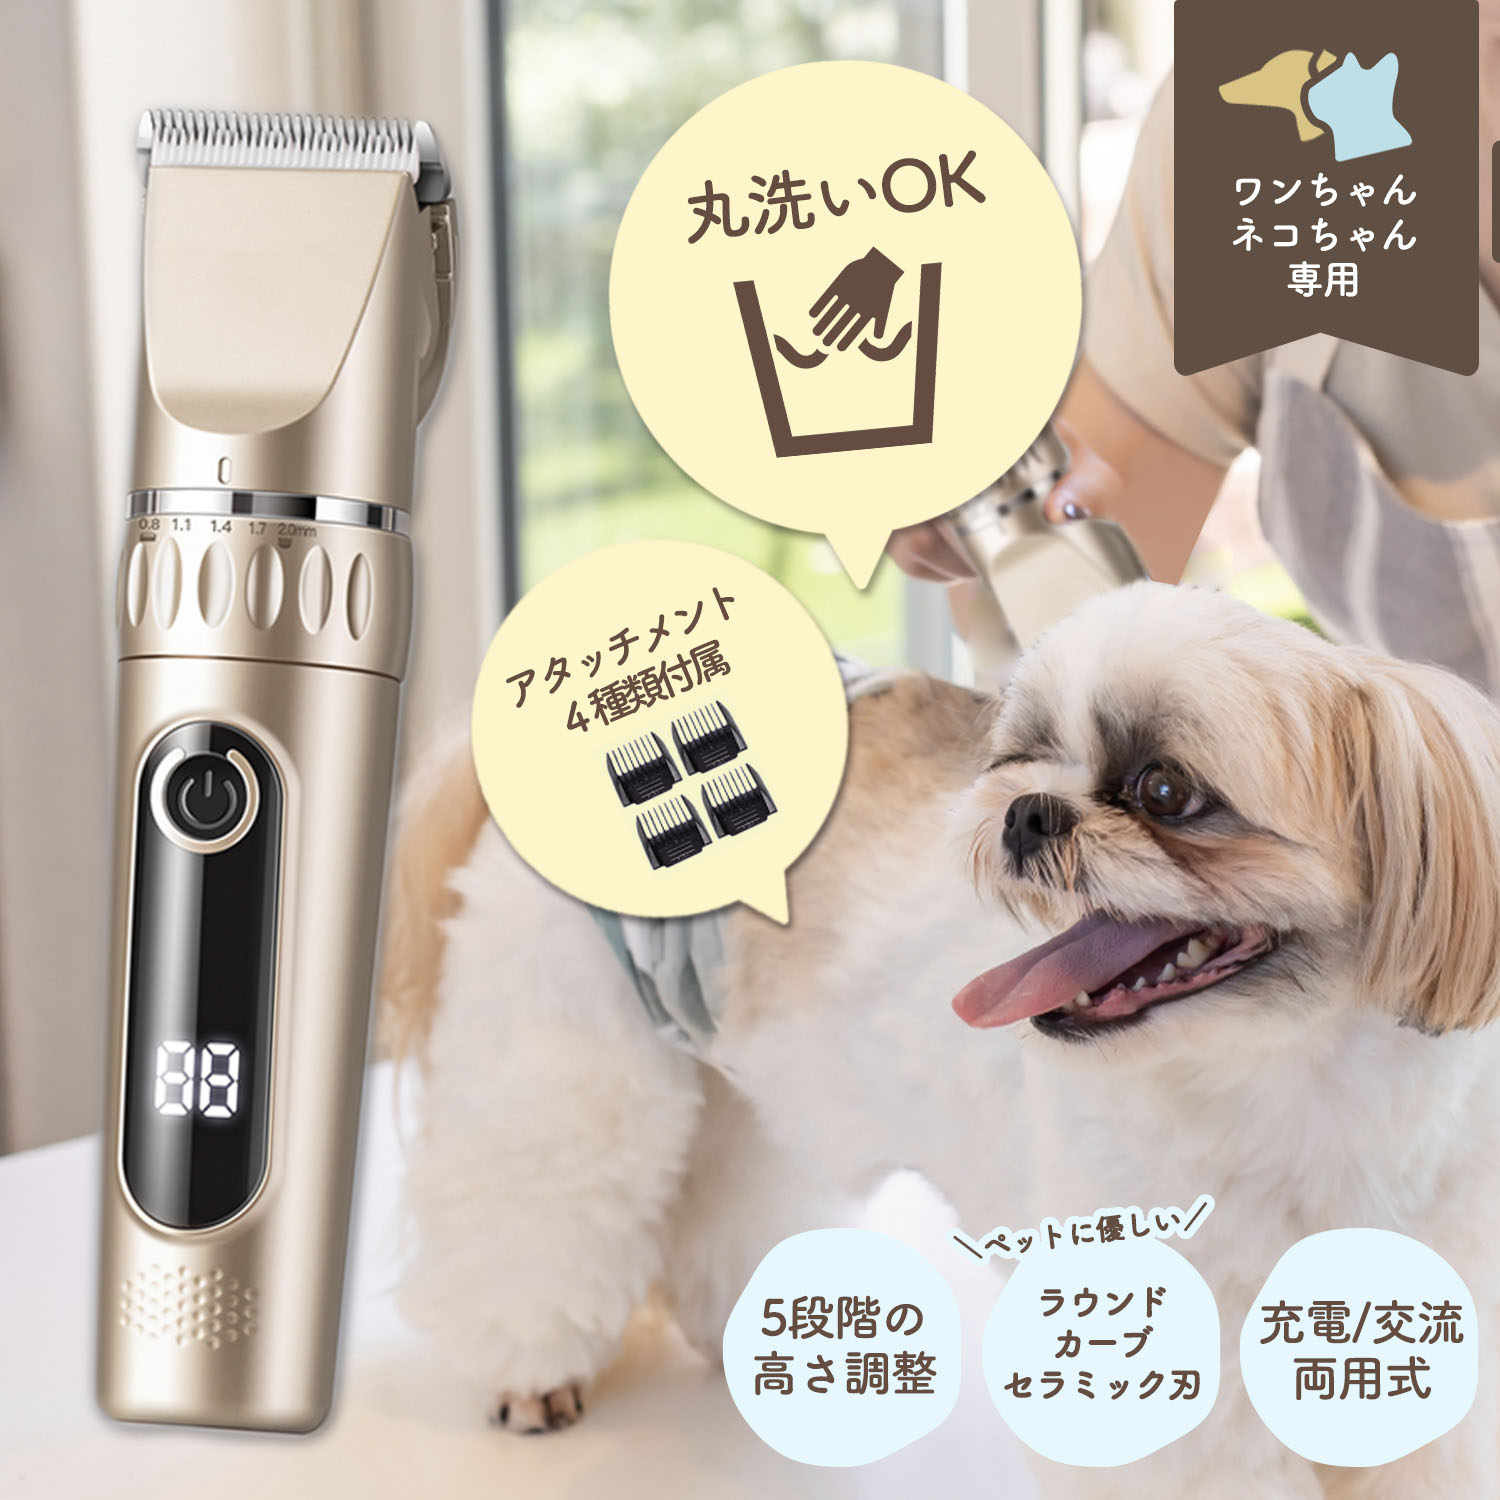 【楽天市場】ペット用バリカン バリカン 犬用 犬 ペット用品 